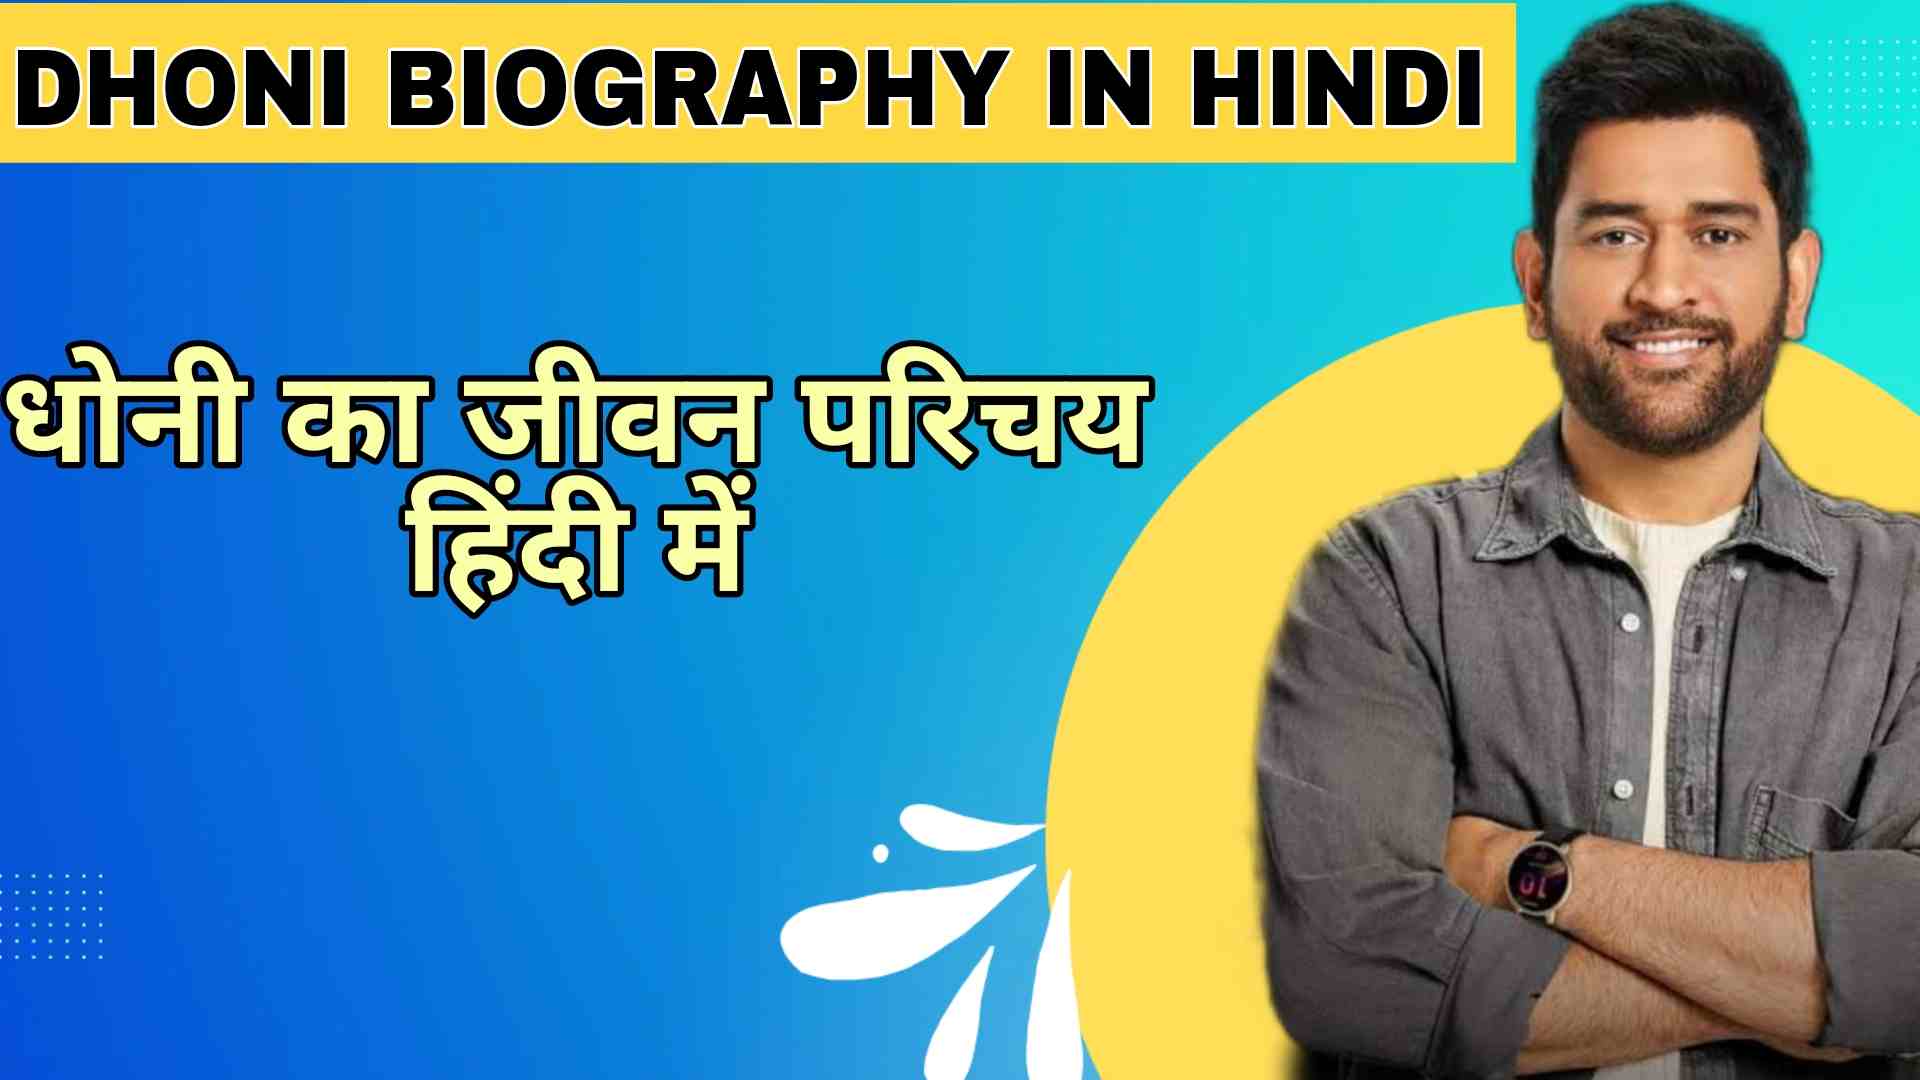 MS Dhoni Biography in Hindi